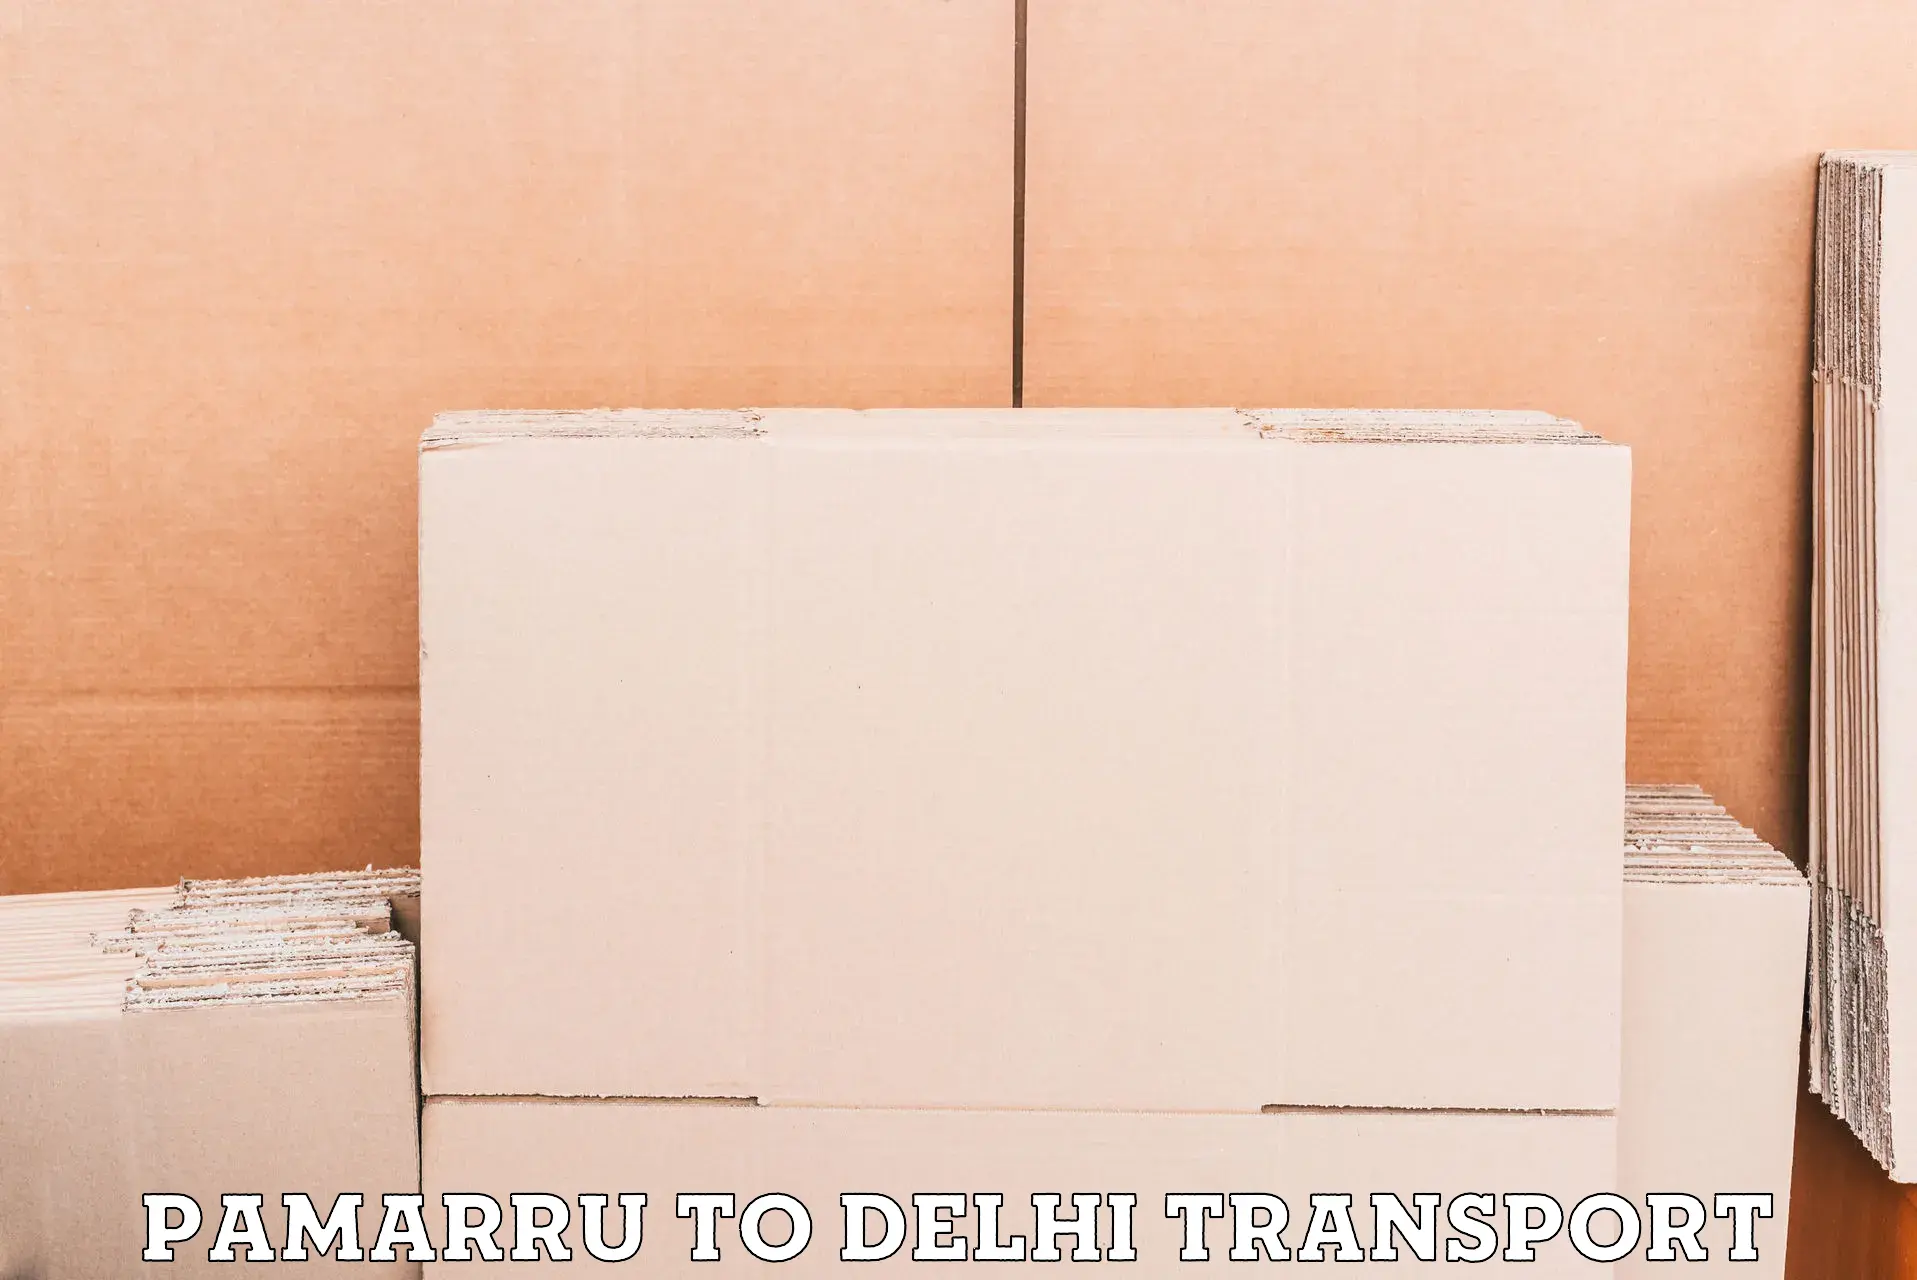 All India transport service Pamarru to Delhi